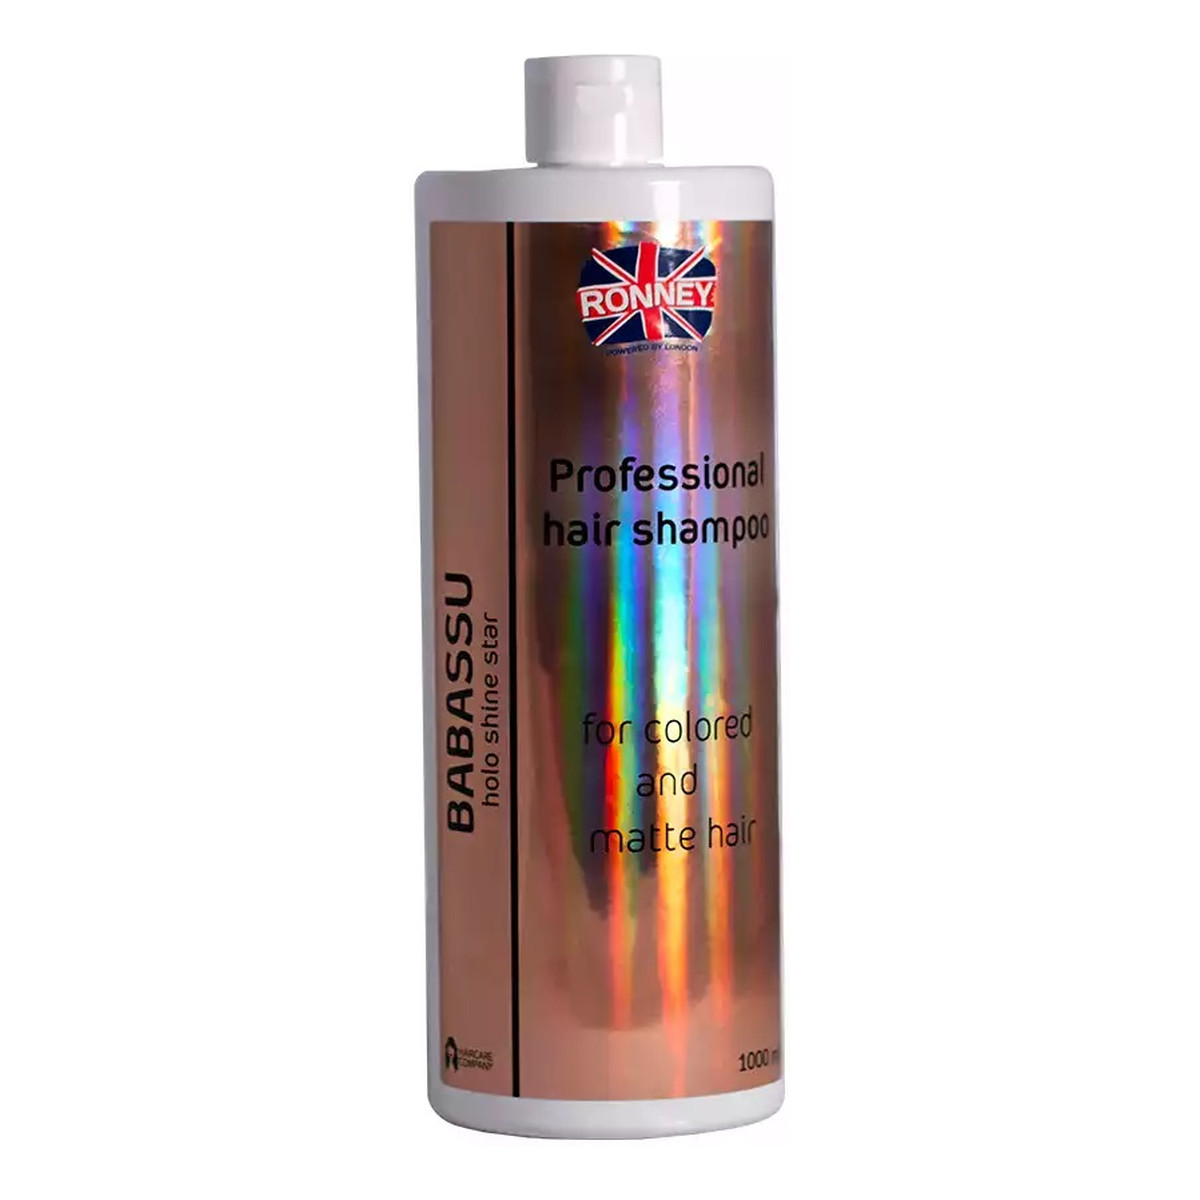 Ronney Babassu holo shine star professional hair shampoo szampon energetyzujący do włosów farbowanych i matowych 1000ml